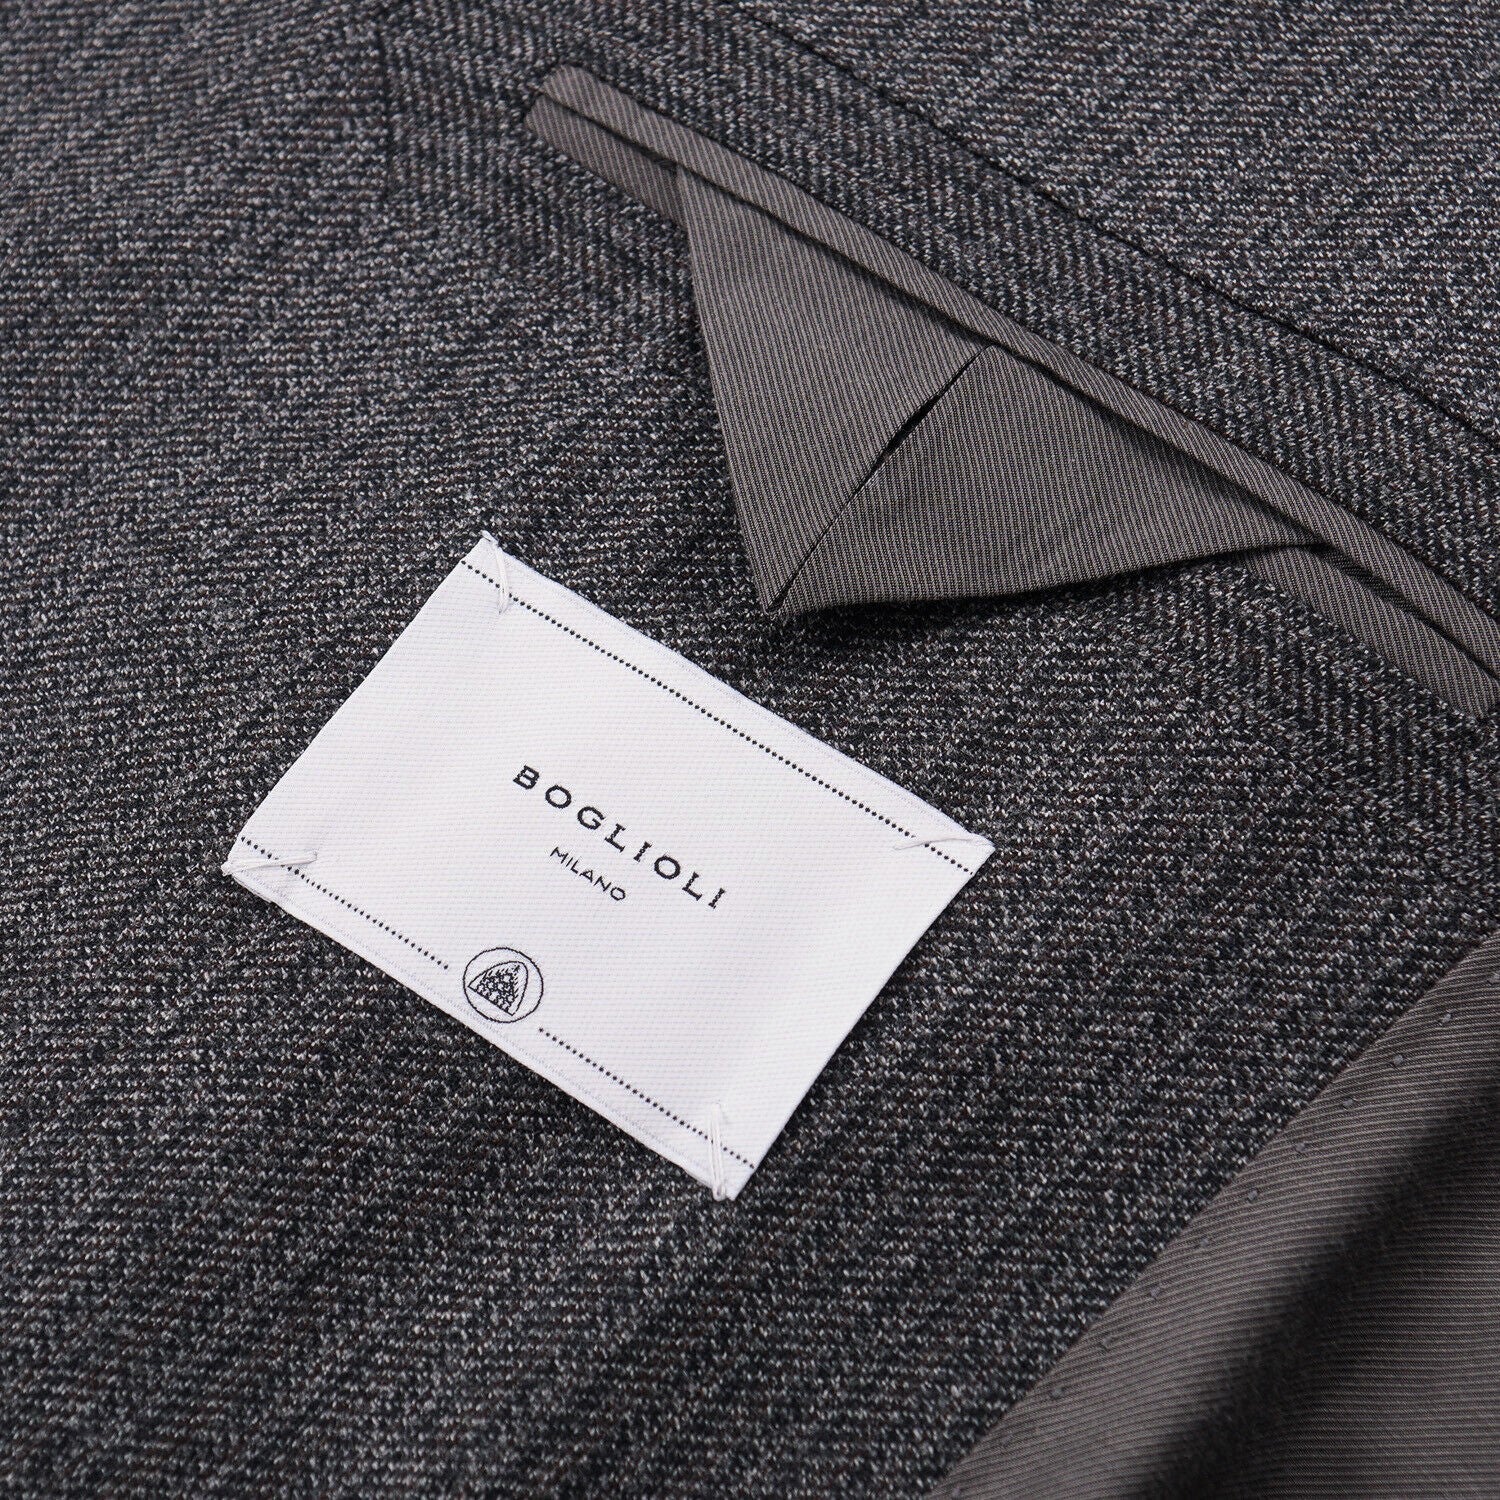 Boglioli Patterned Wool 'K Jacket' Suit - Top Shelf Apparel